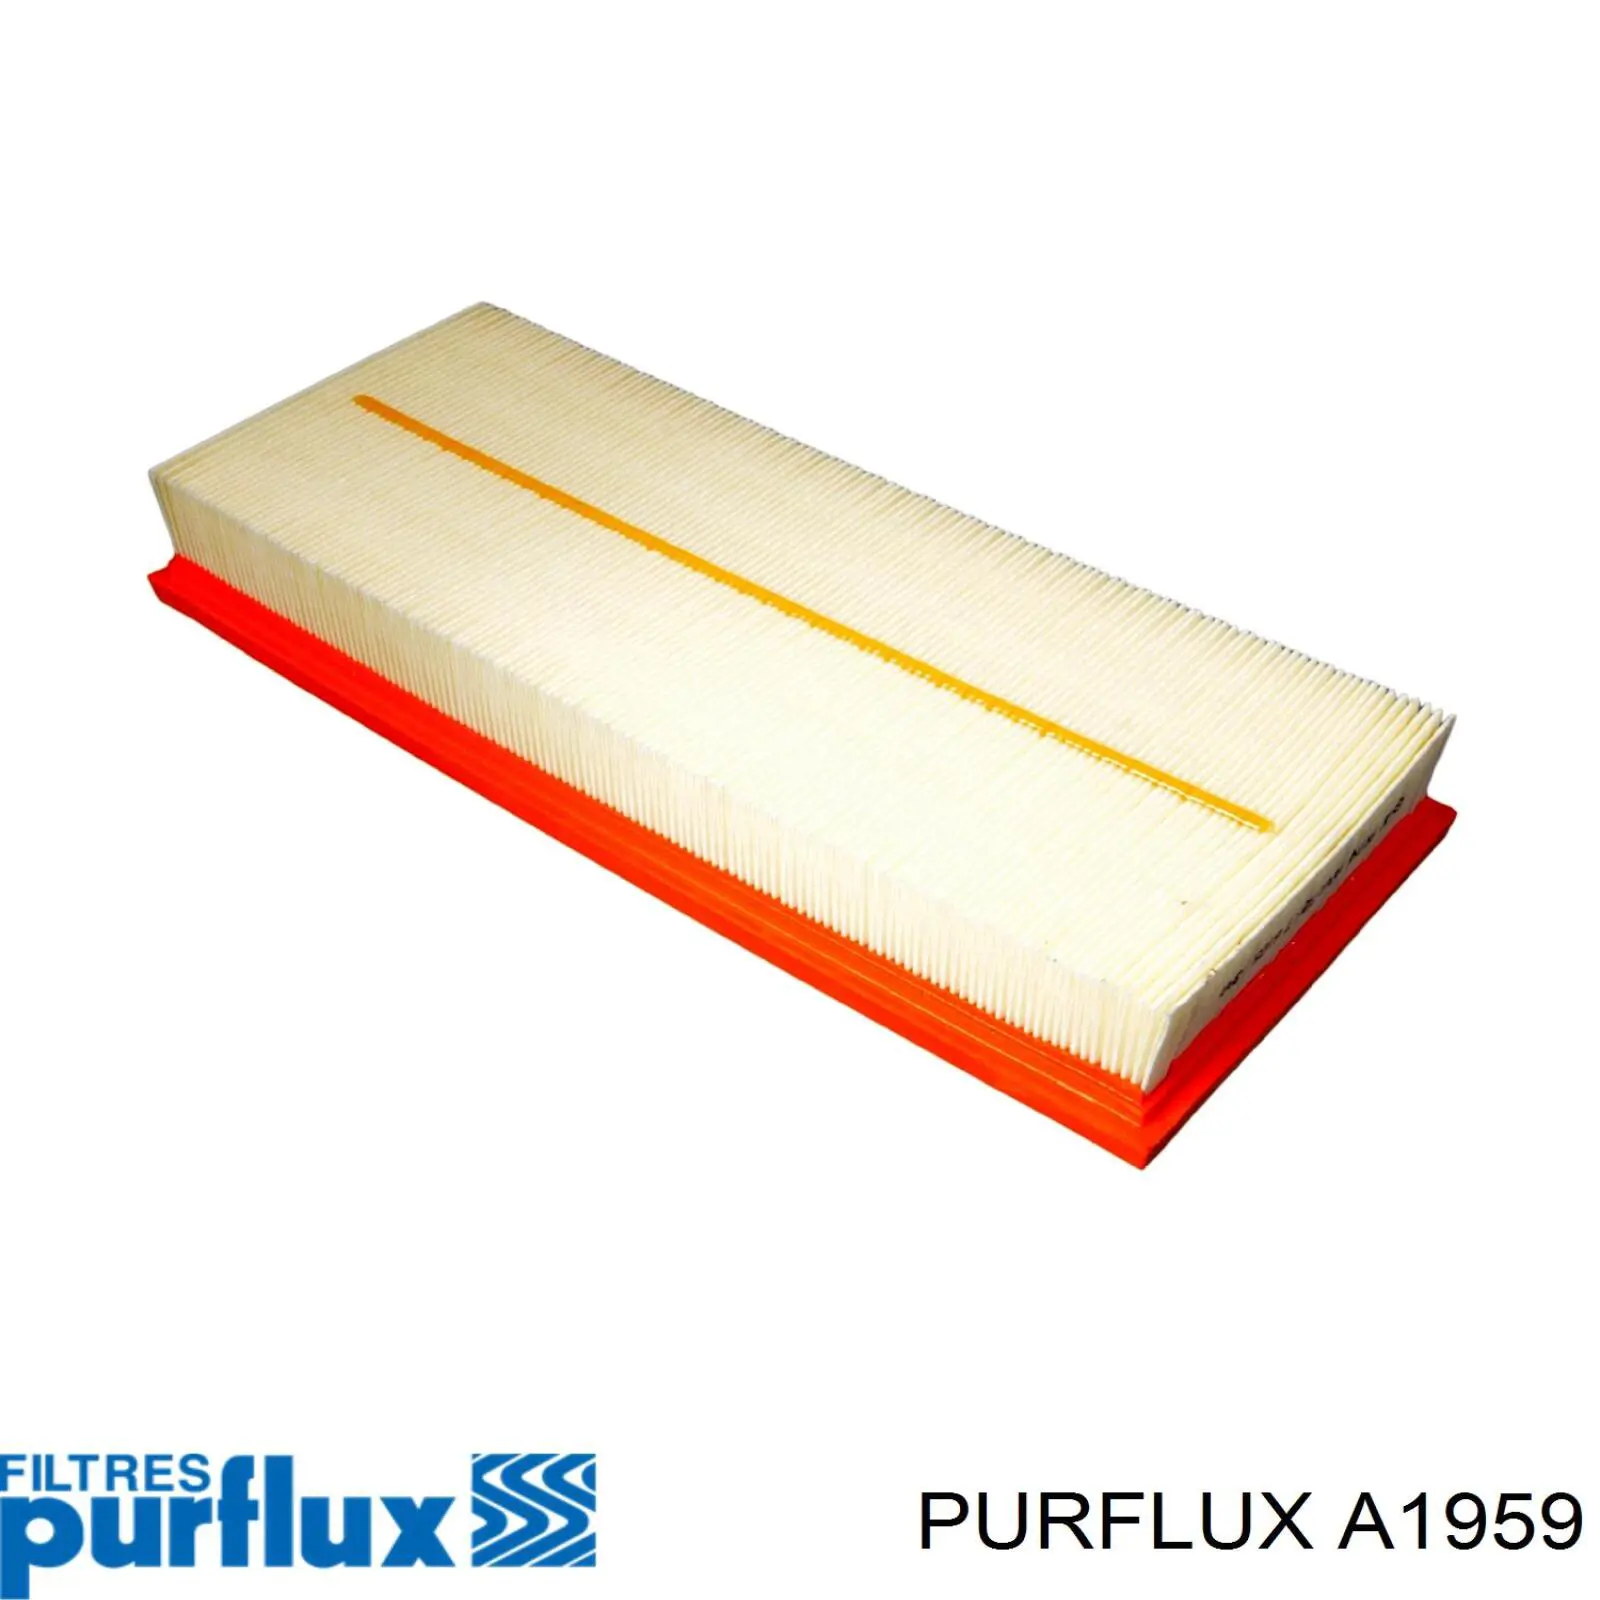 A1959 Purflux filtro de aire